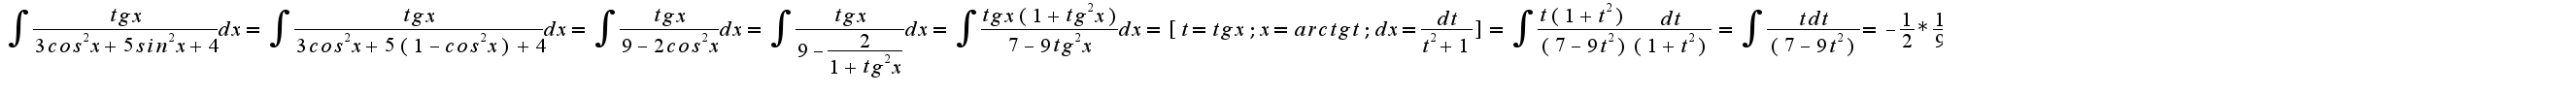 $ \int_{}^{}{\frac{tg x}{3cos^2 x +5 sin^2 x +4}dx}= \int_{}^{}{\frac{tg x}{3cos^2 x +5 (1-cos^2 x) +4}dx}= \int_{}^{}{\frac{tg x}{9-2cos^2 x}dx}= \int_{}^{}{\frac{tg x}{9-\frac{2}{1+tg^2 x}}dx}= \int_{}^{}{\frac{tg x(1+tg^2 x)}{7-9tg^2 x}dx}= [t=tg x;  x=arctg t;  dx=\frac{dt}{t^2+1}]= \int_{}^{}{\frac{t(1+t^2)}{(7-9t^2)} \frac{dt}{(1+t^2)}} = \int_{}^{}{\frac{tdt}{(7-9t^2)} } = - \frac{1}{2}* \frac{1}{9} \int_{}^{}{\frac{d(7-9t^2)}{(7-9t^2)} } = - \frac{1}{18} ln(7-9t^2)  +C = - \frac{1}{18} ln(7-9tg^2 x)  +C $